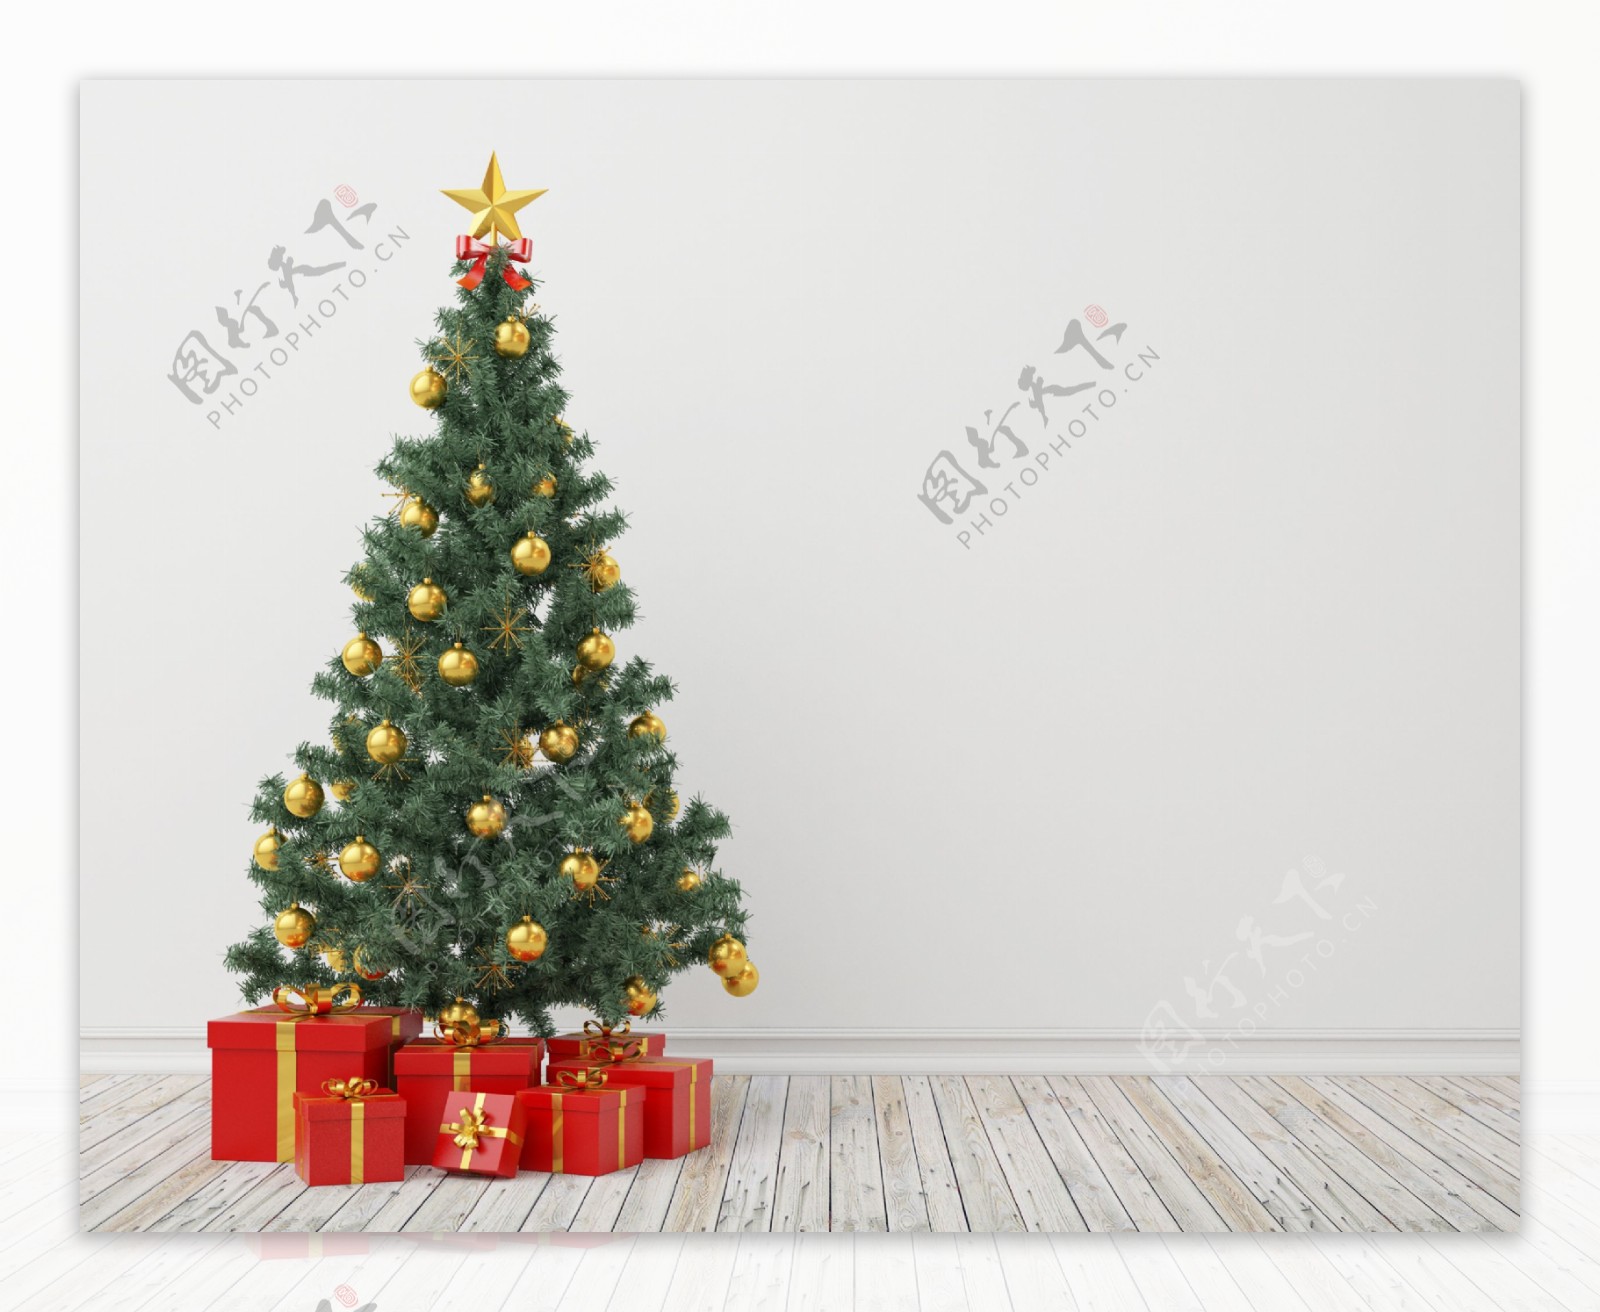 地板上的圣诞树和礼品盒图片